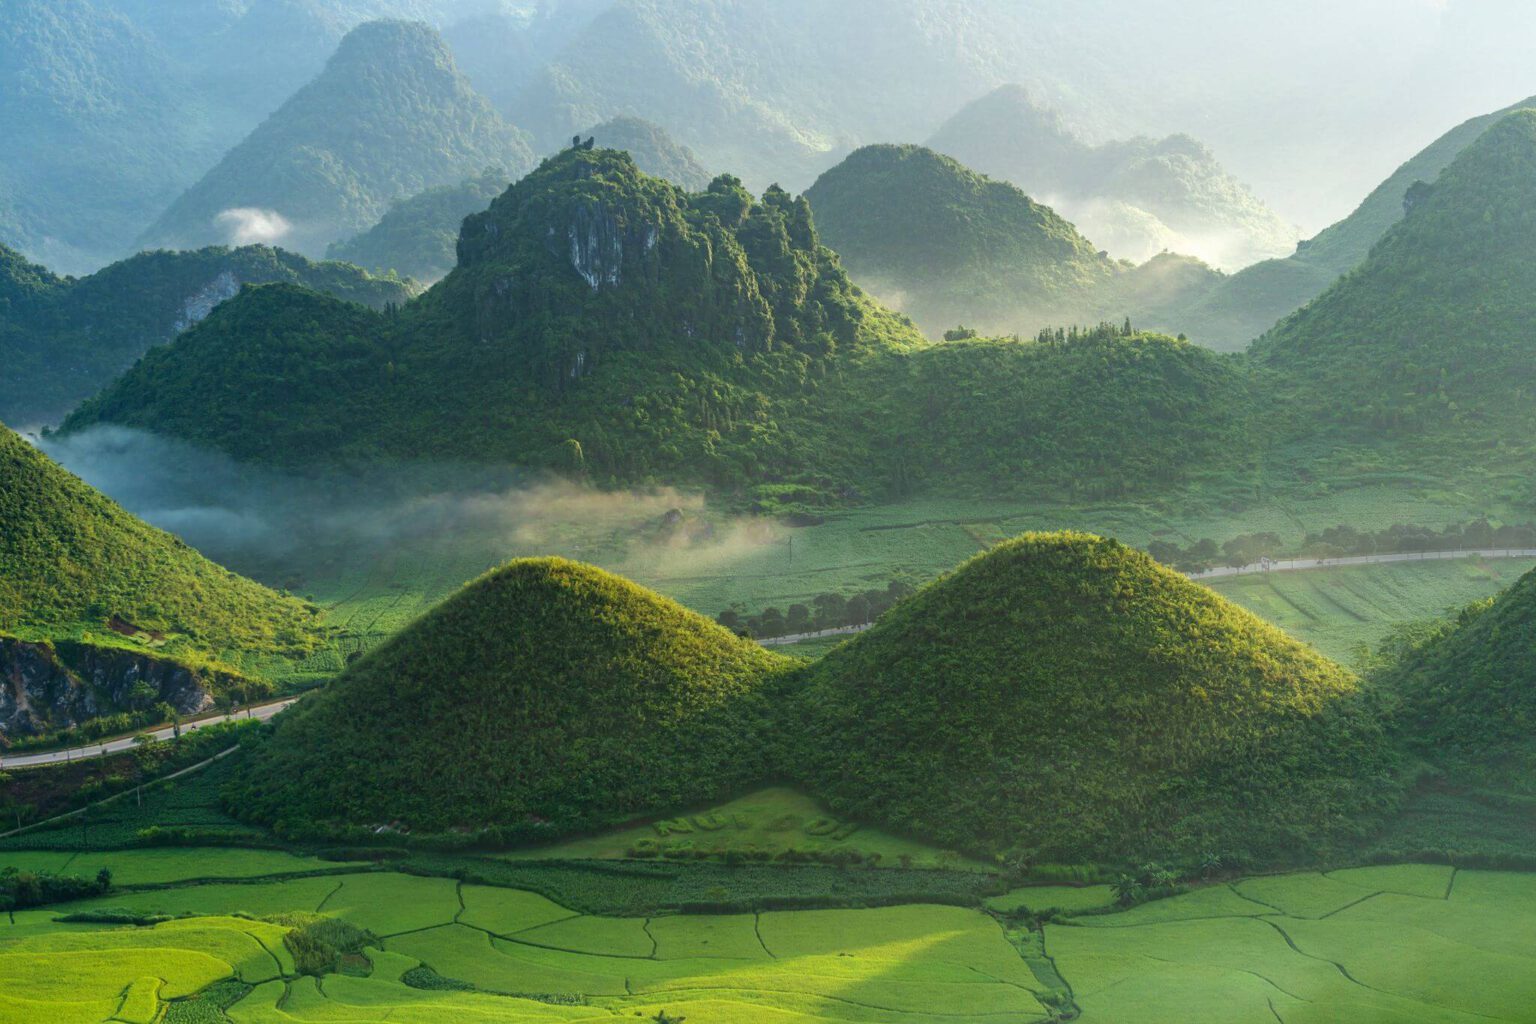 7 điểm du lịch Việt Nam sở hữu cảnh đẹp siêu thực được du khách nước ngoài công nhận không thể diễn đạt qua ảnh chụp - 17